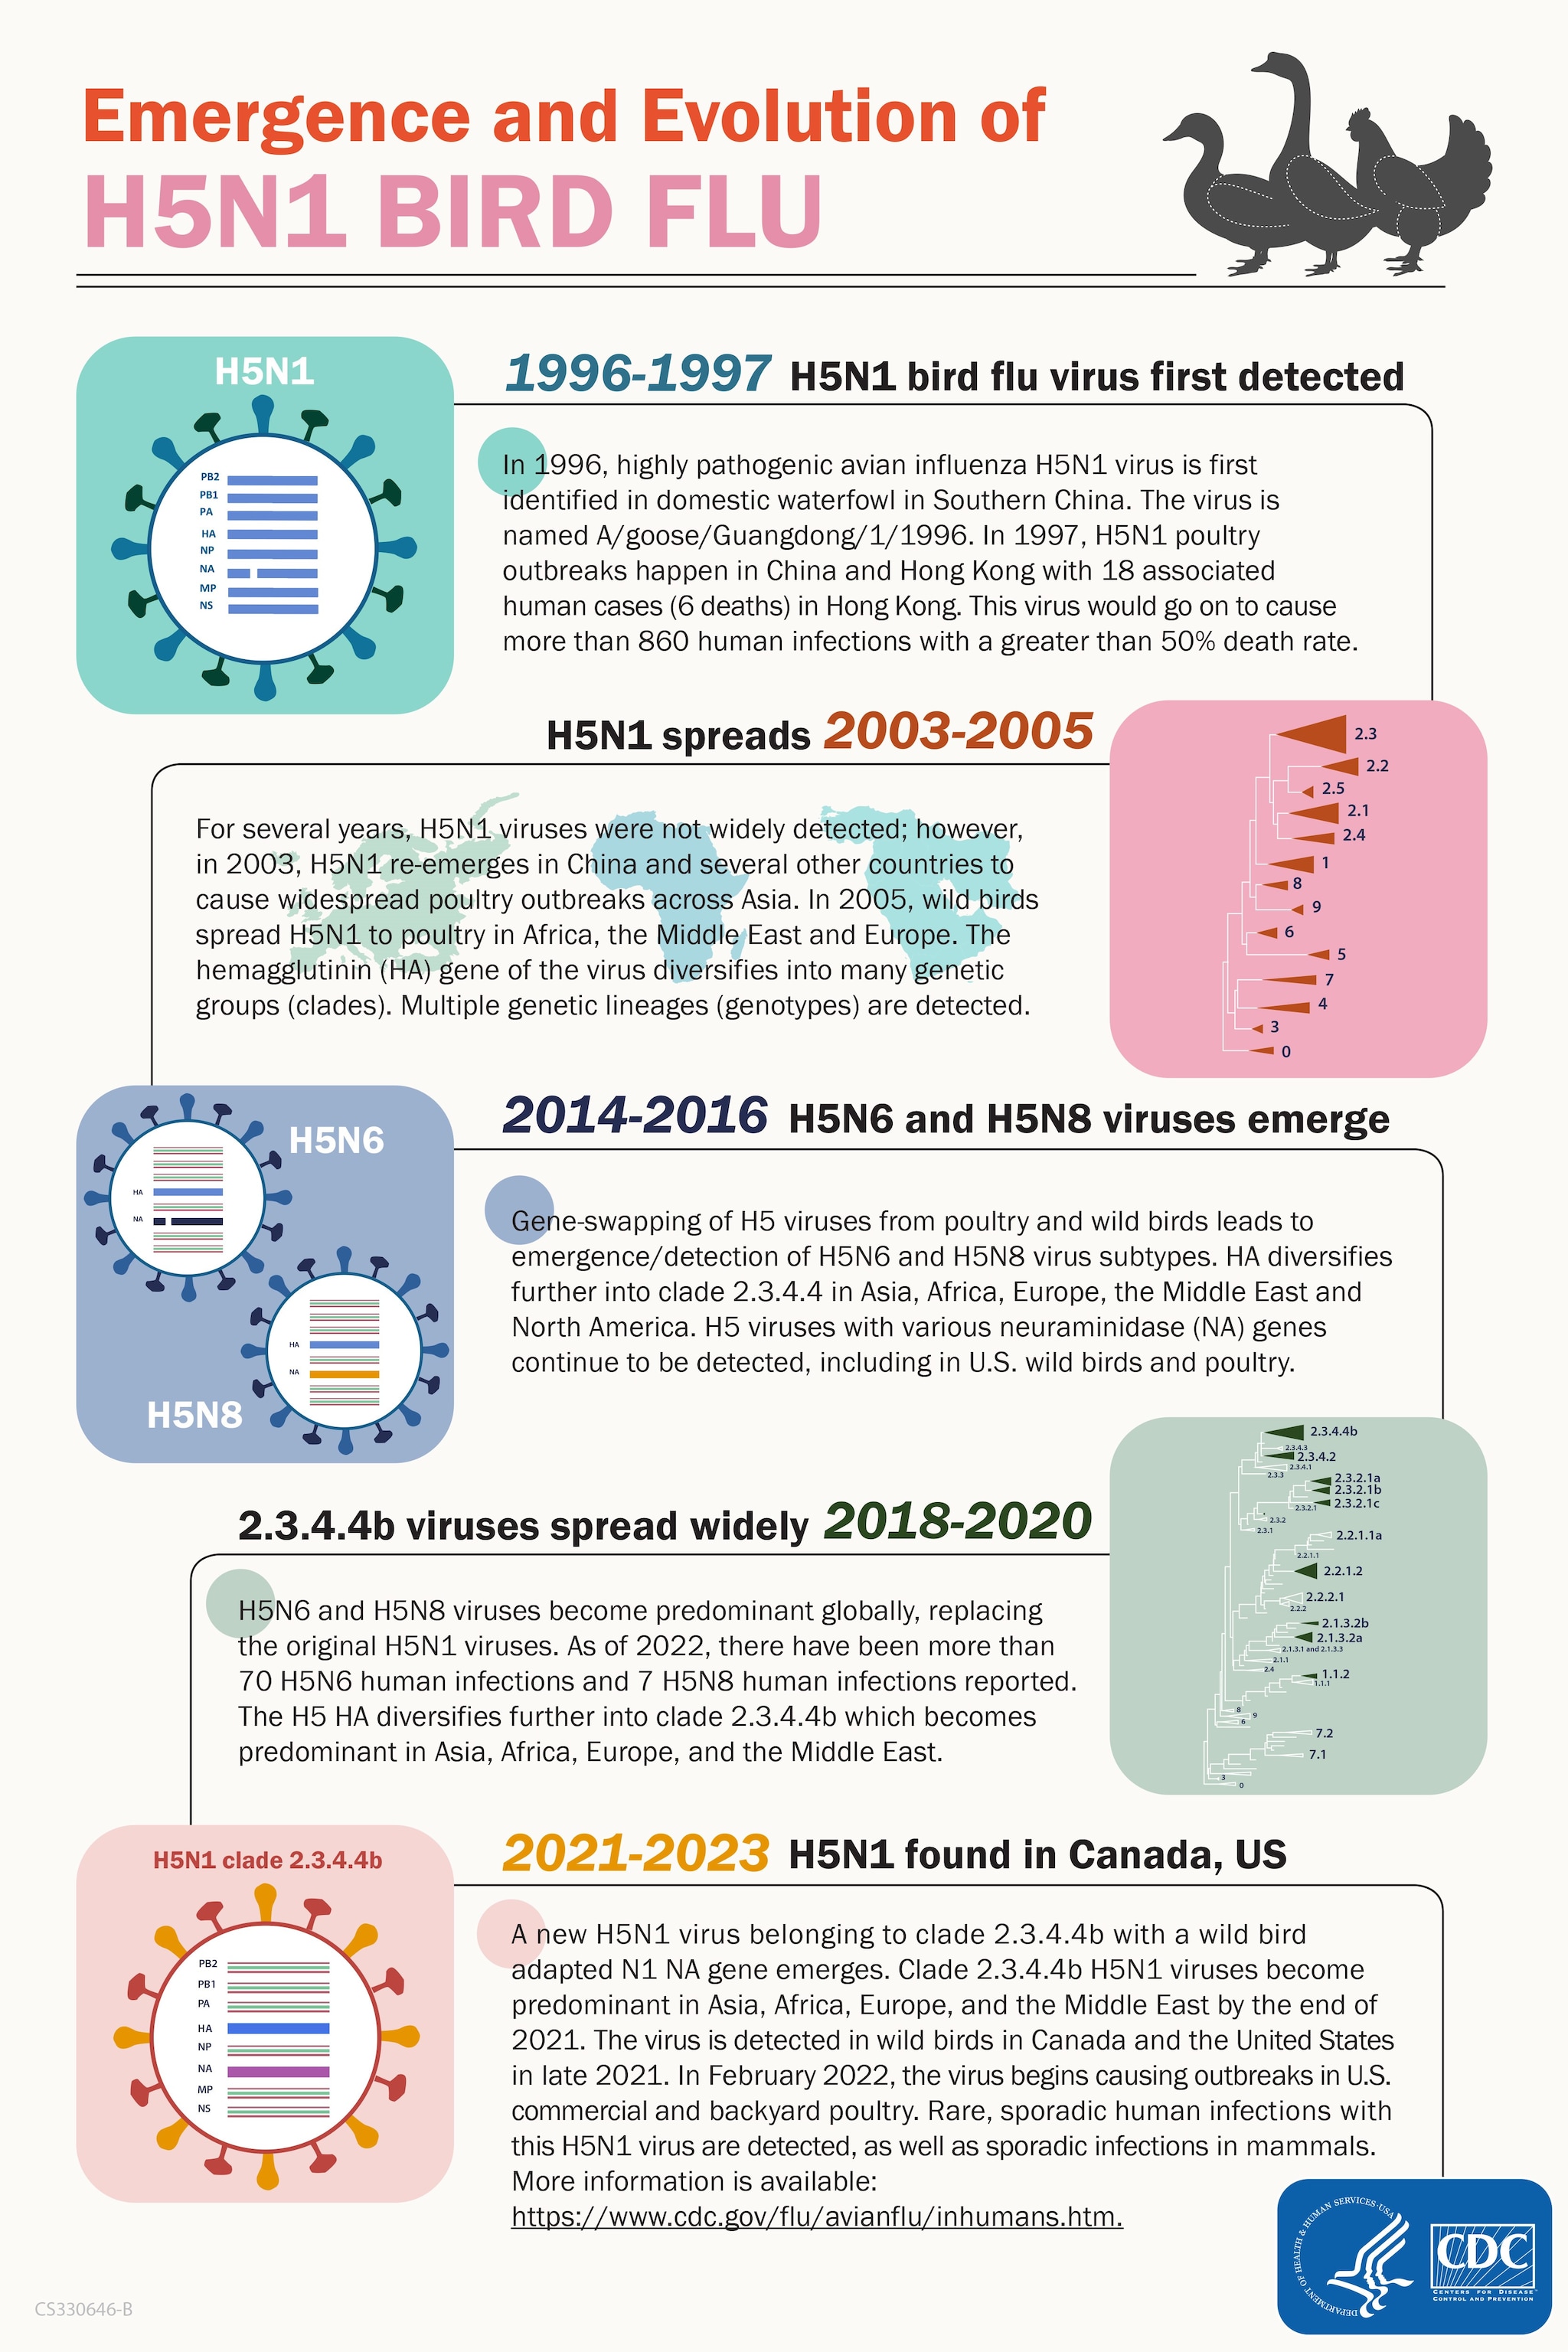 Imagen del PDF - Aparición y evolución de la influenza aviar H5N1